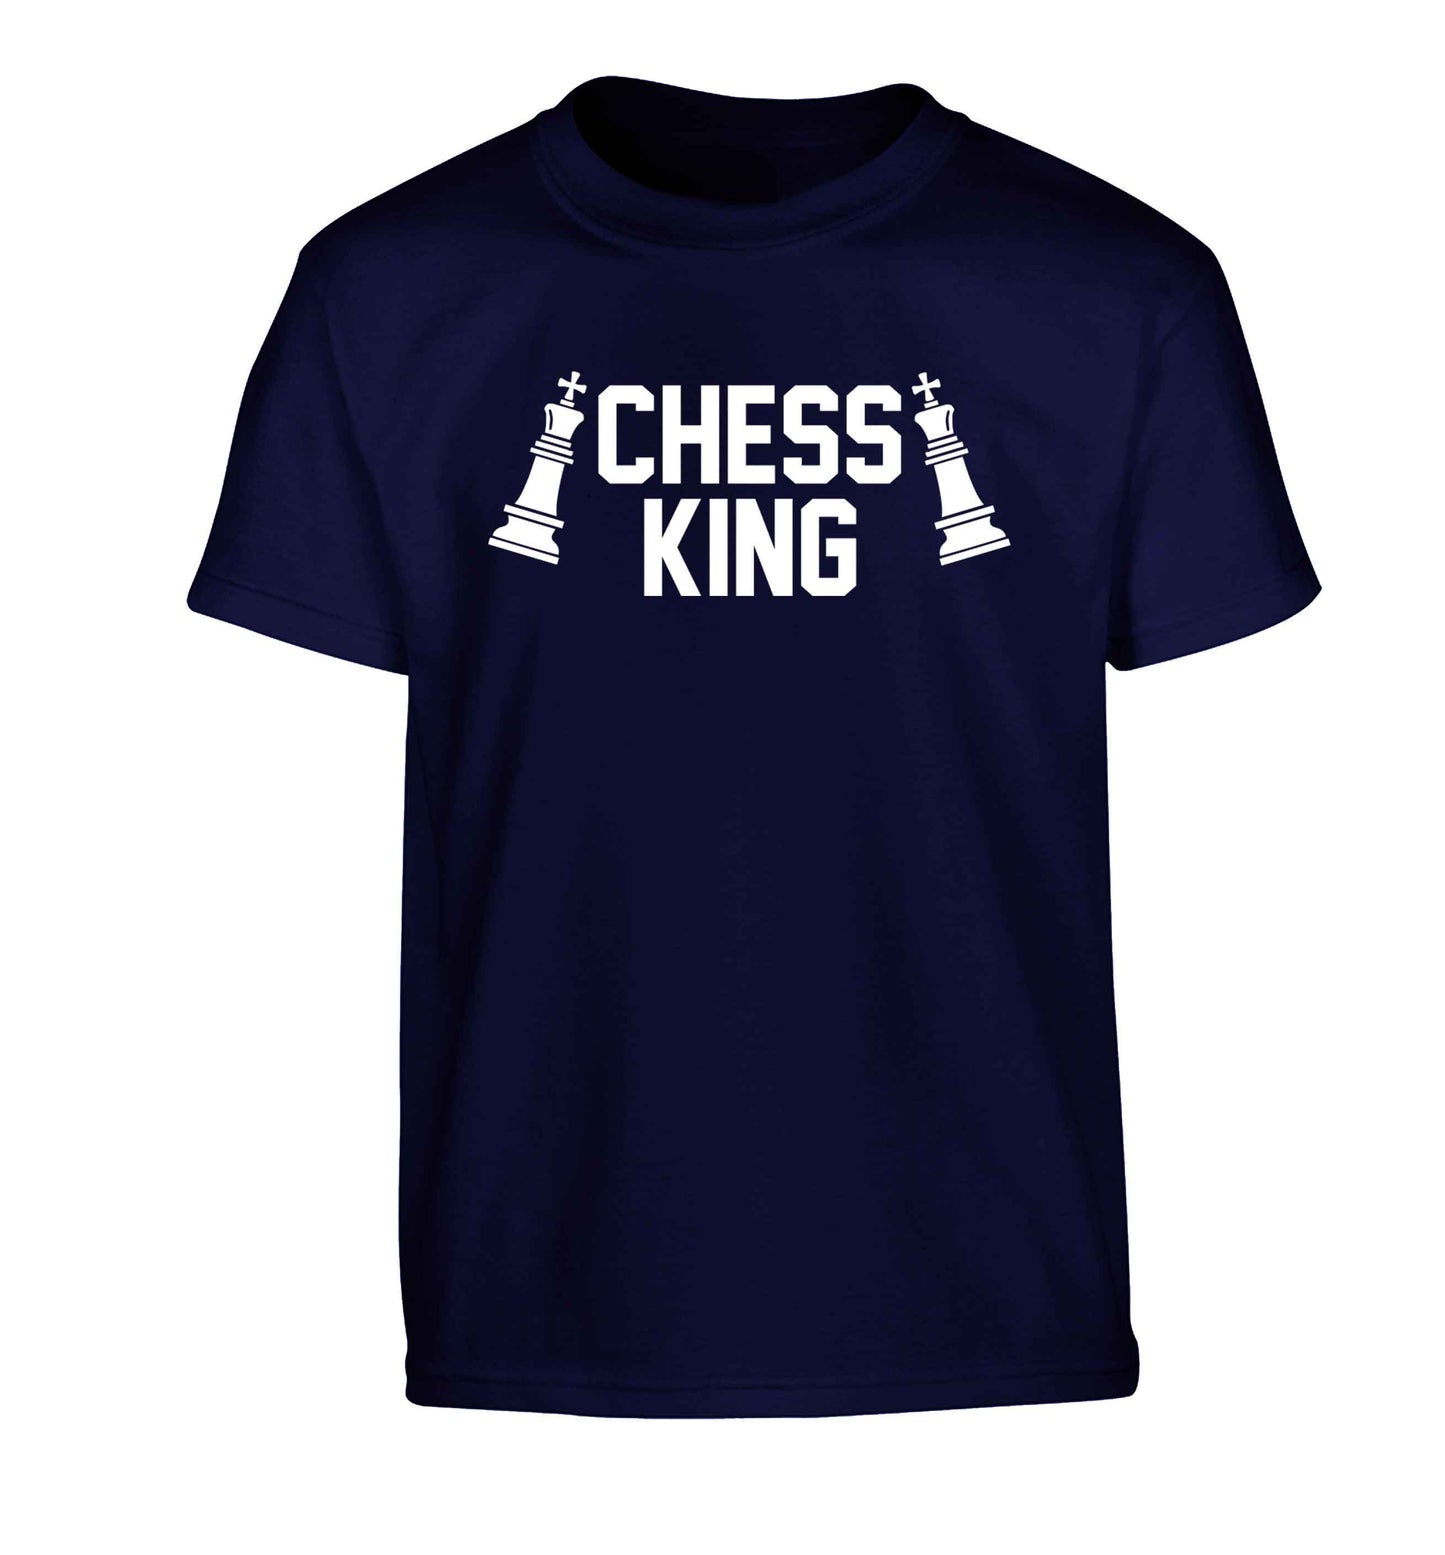 Chess king Children's navy Tshirt 12-13 Years